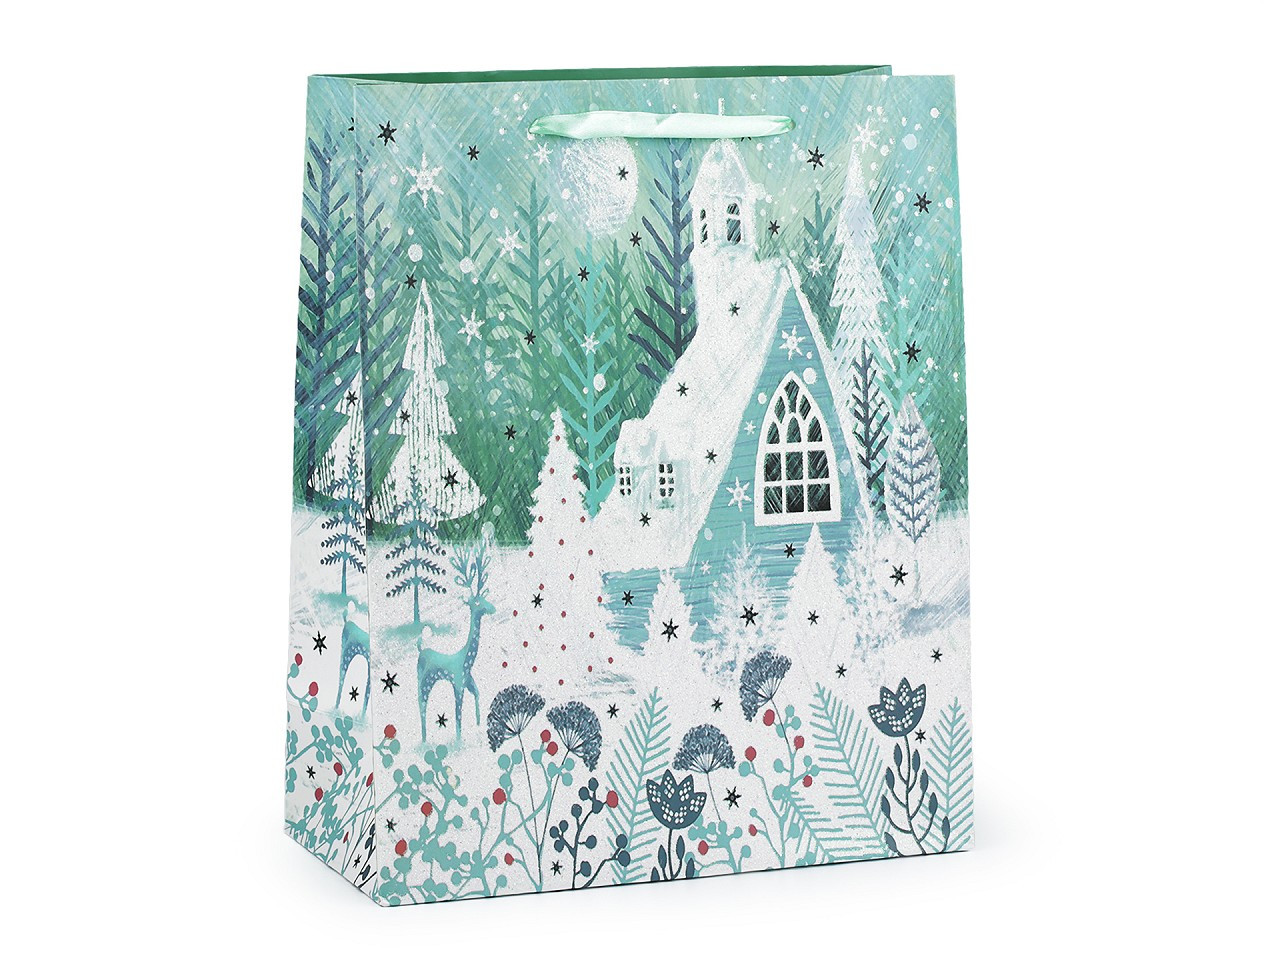 Dárková taška vánoční s glitry, barva 2 mentolová